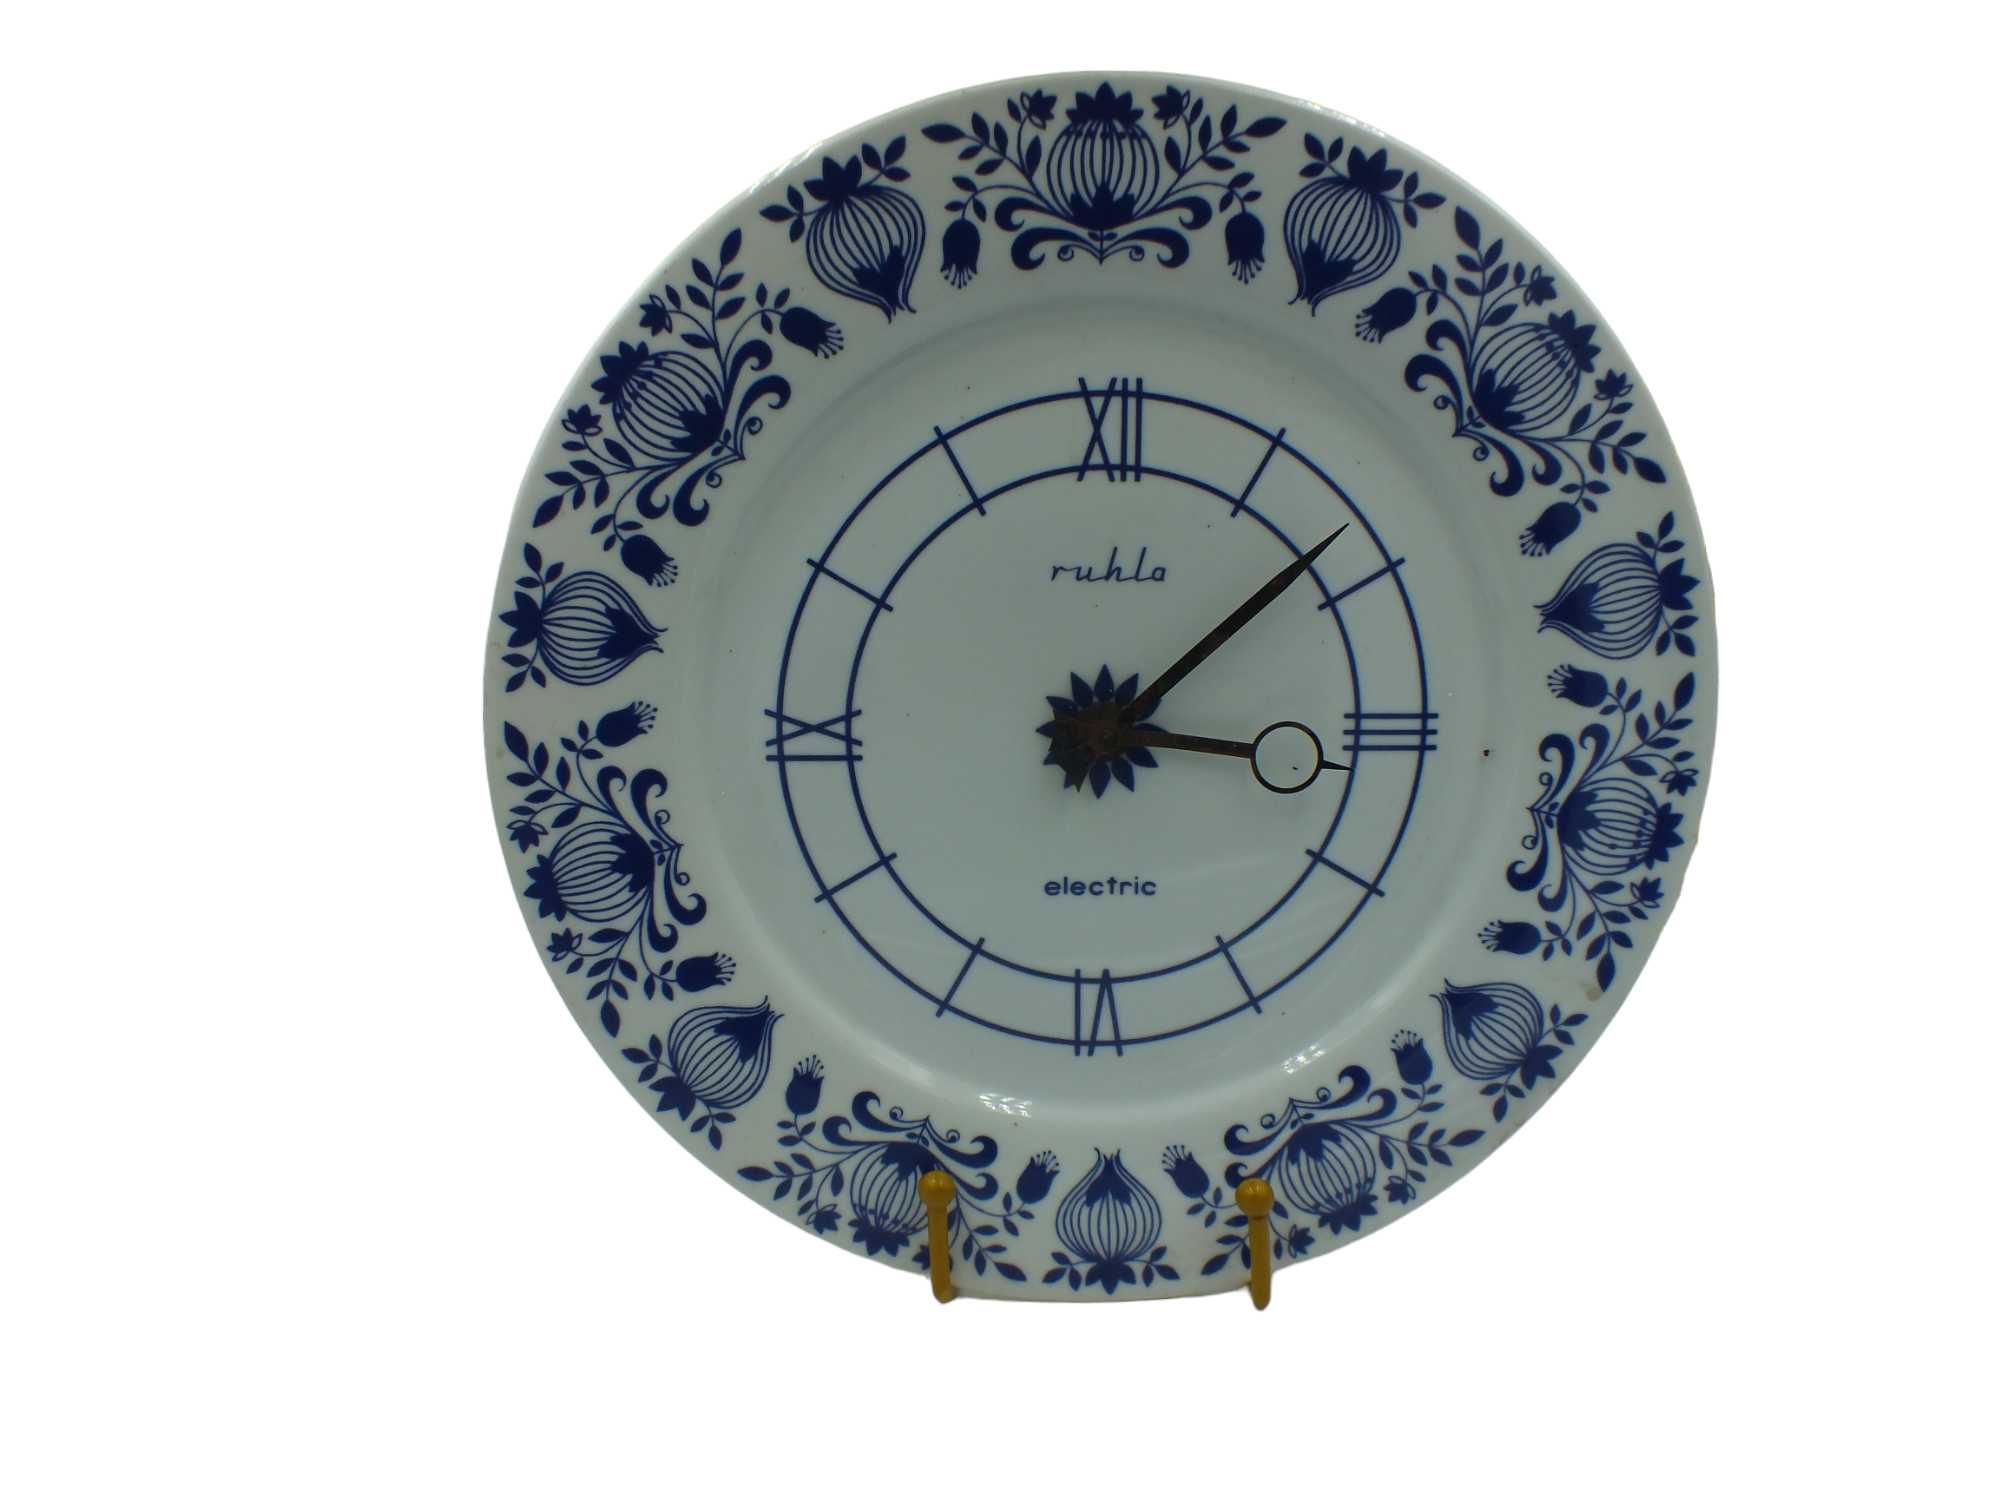 Piękny porcelanowy zegar - wzór cebulowy RUHLA  J